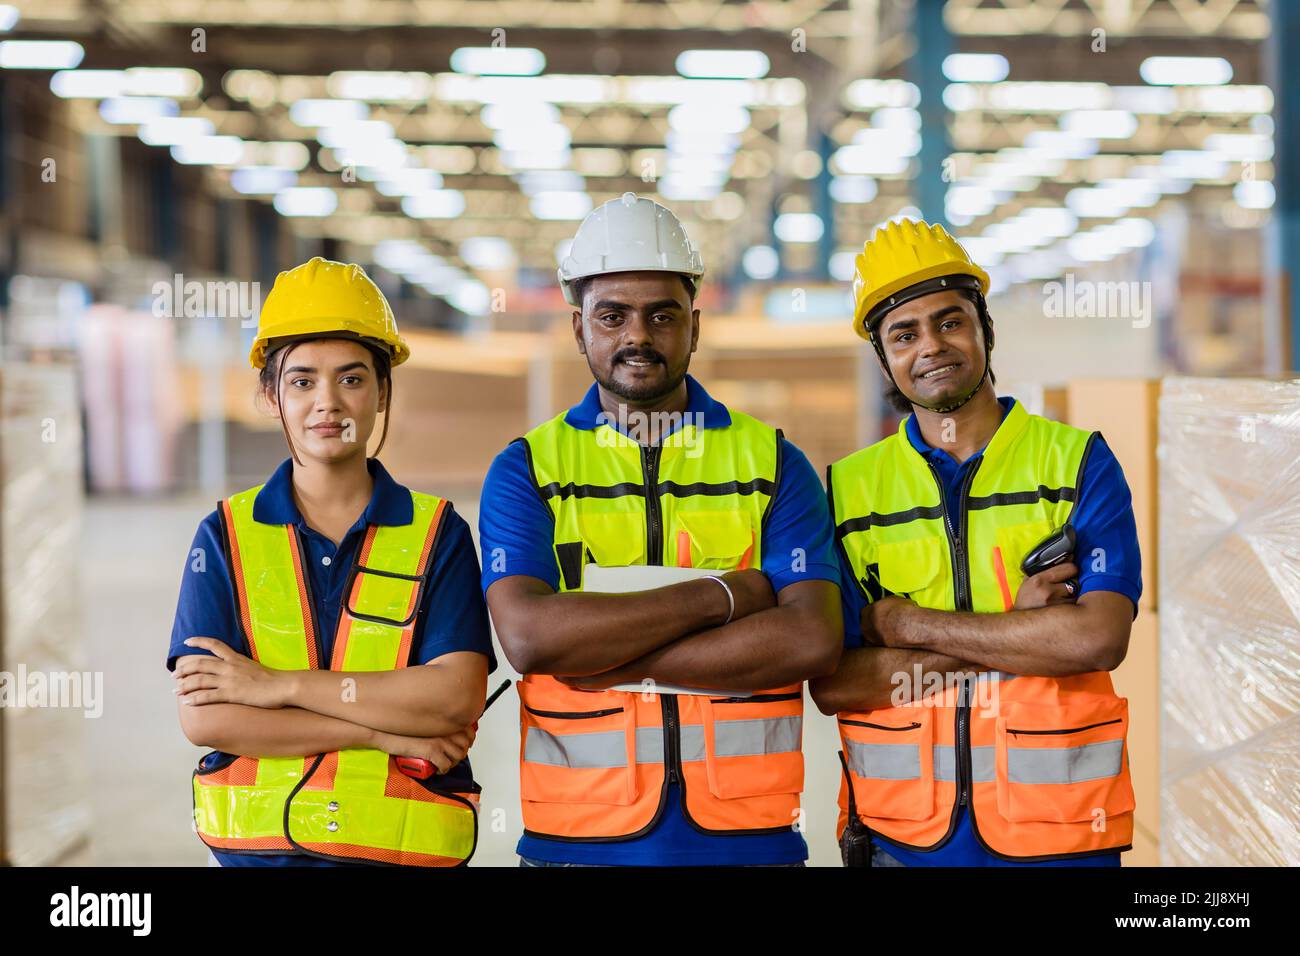 Grupo de personas de ingenieros Trabajador indio Latino hispano confidente sonrisa de pie en un gran almacén de la fábrica Foto de stock